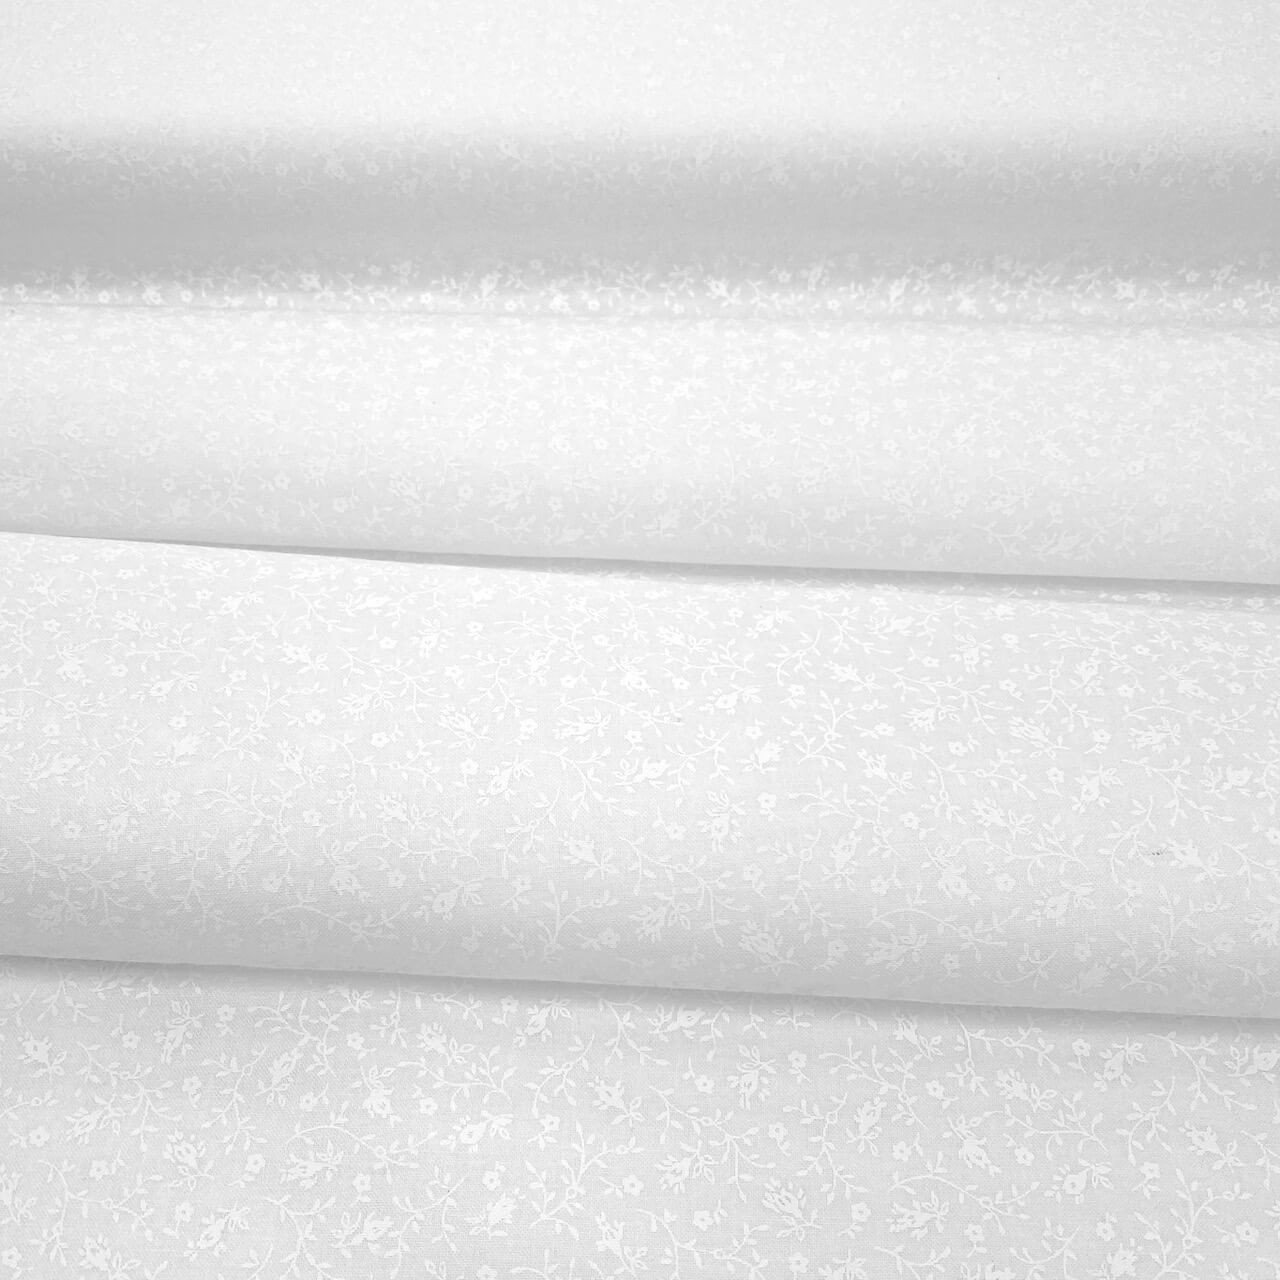 Garden Floor white on white fabric